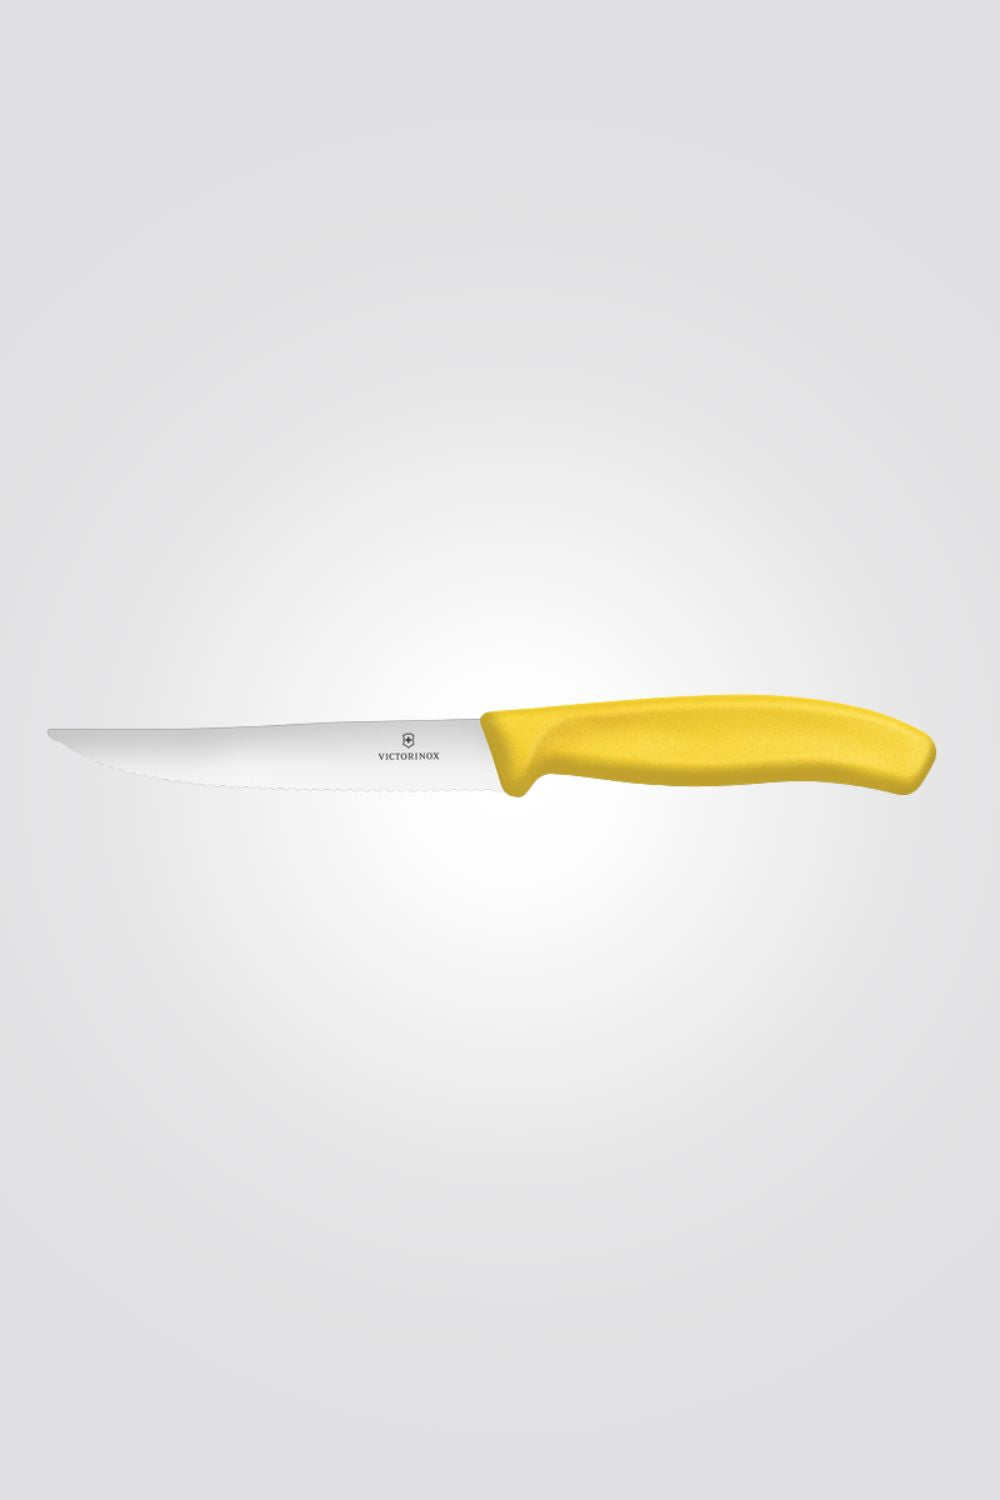 סכין פיצה 12 ס”מ בצבע צהוב